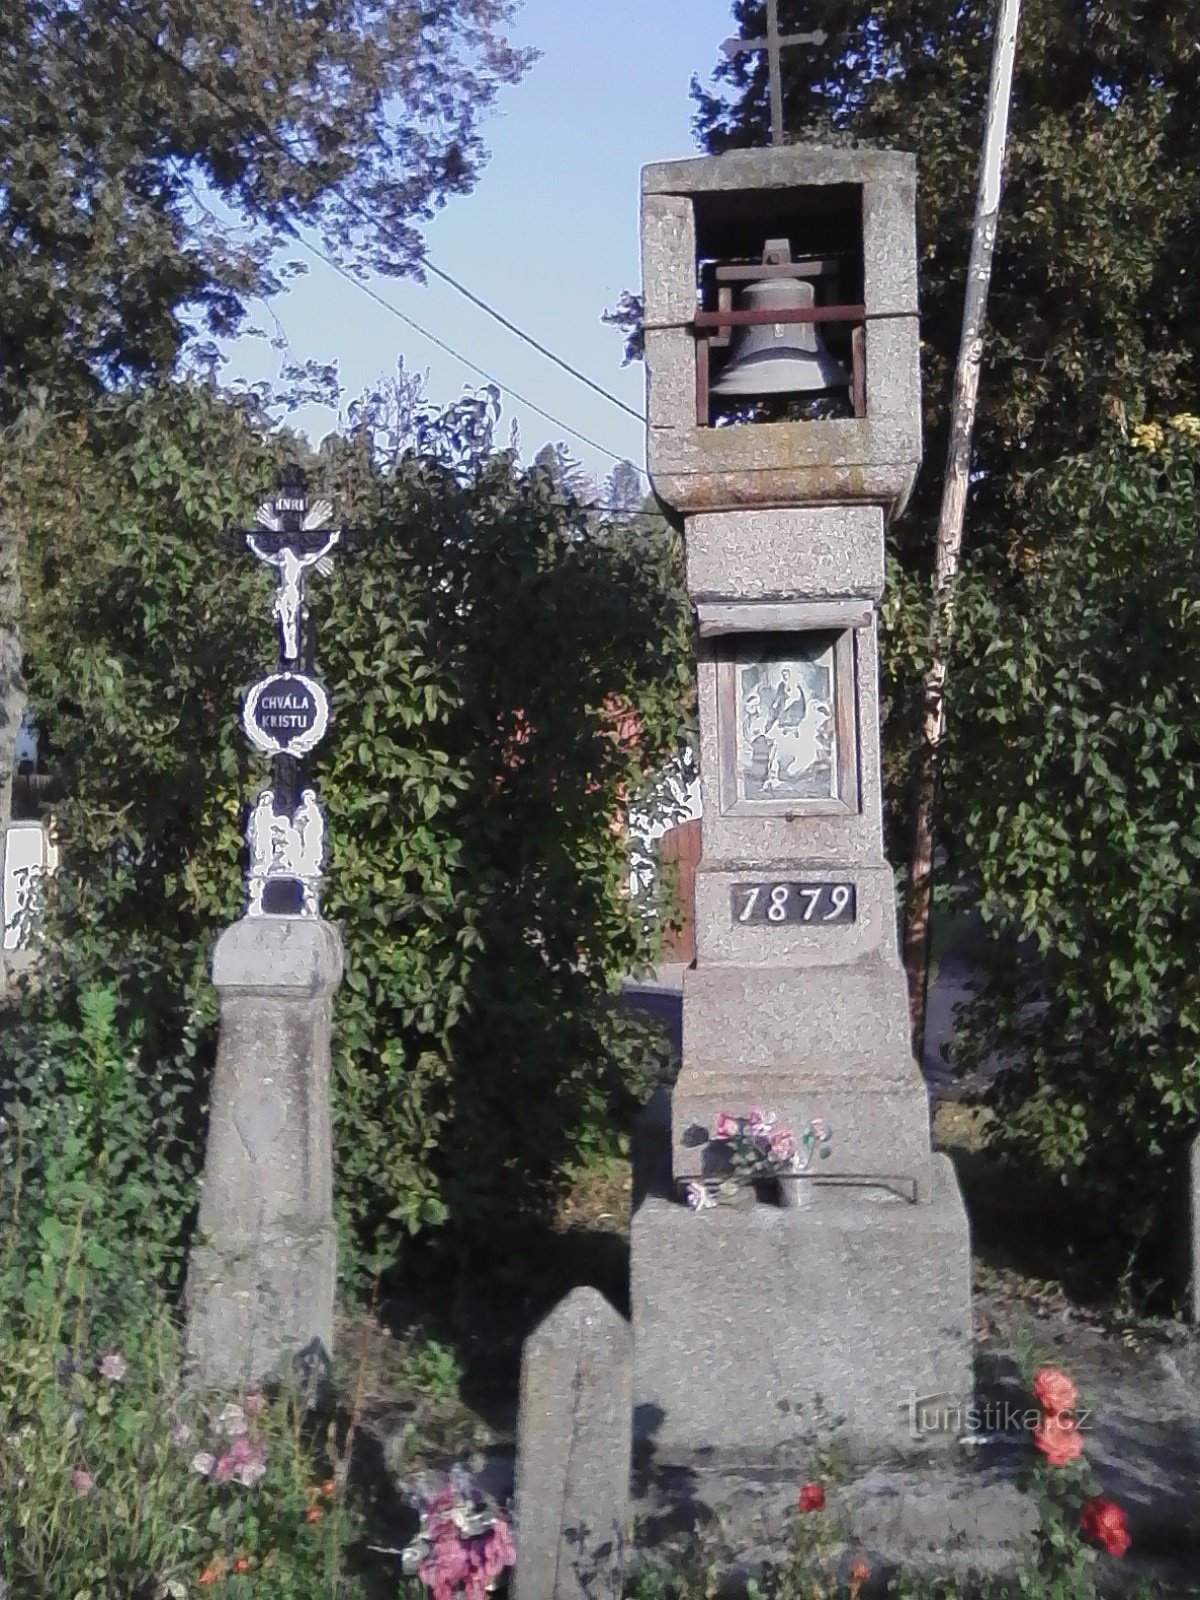 2. Каменная резная колокольня с крестом 1879 г. в Виласова Лгота.